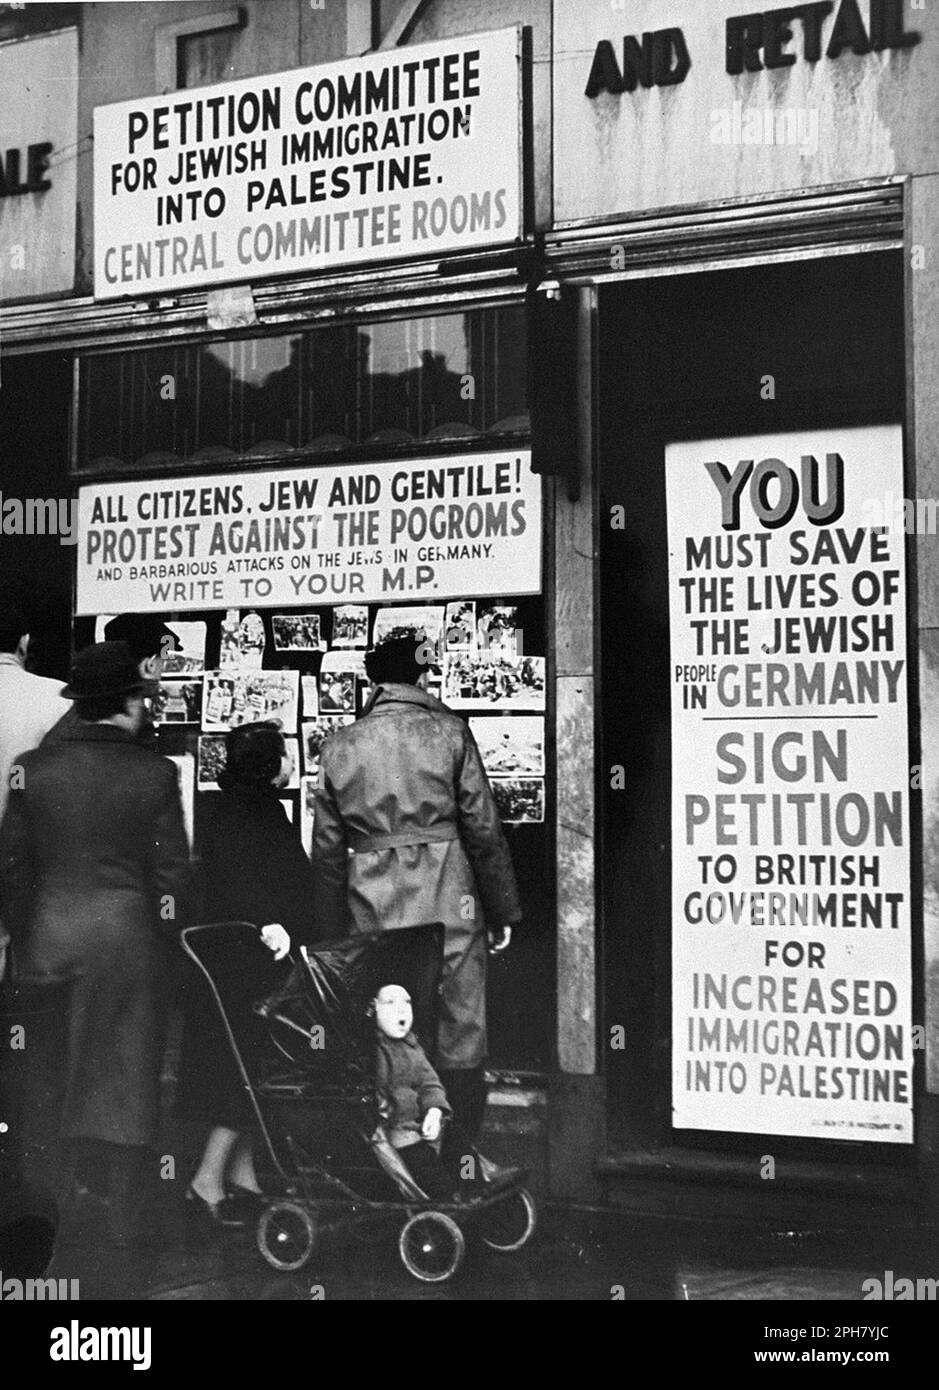 Gli ebrei britannici protestano contro le restrizioni all'immigrazione in Palestina dopo Kristallnacht. Kristallnacht era un pogrom nazionale organizzato e realizzato dal partito nazista il 9th novembre 1938. Negozi e sinagoghe sono stati distrutti e la gente umiliata e picchiata mentre la polizia guardava, o addirittura aiutava. Anche se la quantità di danni e il numero di persone attaccate era piuttosto esiguo, il fatto che fosse completamente inopposito ha dimostrato ai nazisti che potevano veramente iniziare a far parte degli ebrei e, in quanto tale, è una delle pietre miliari più importanti sulla via dell'Olocausto. Foto Stock